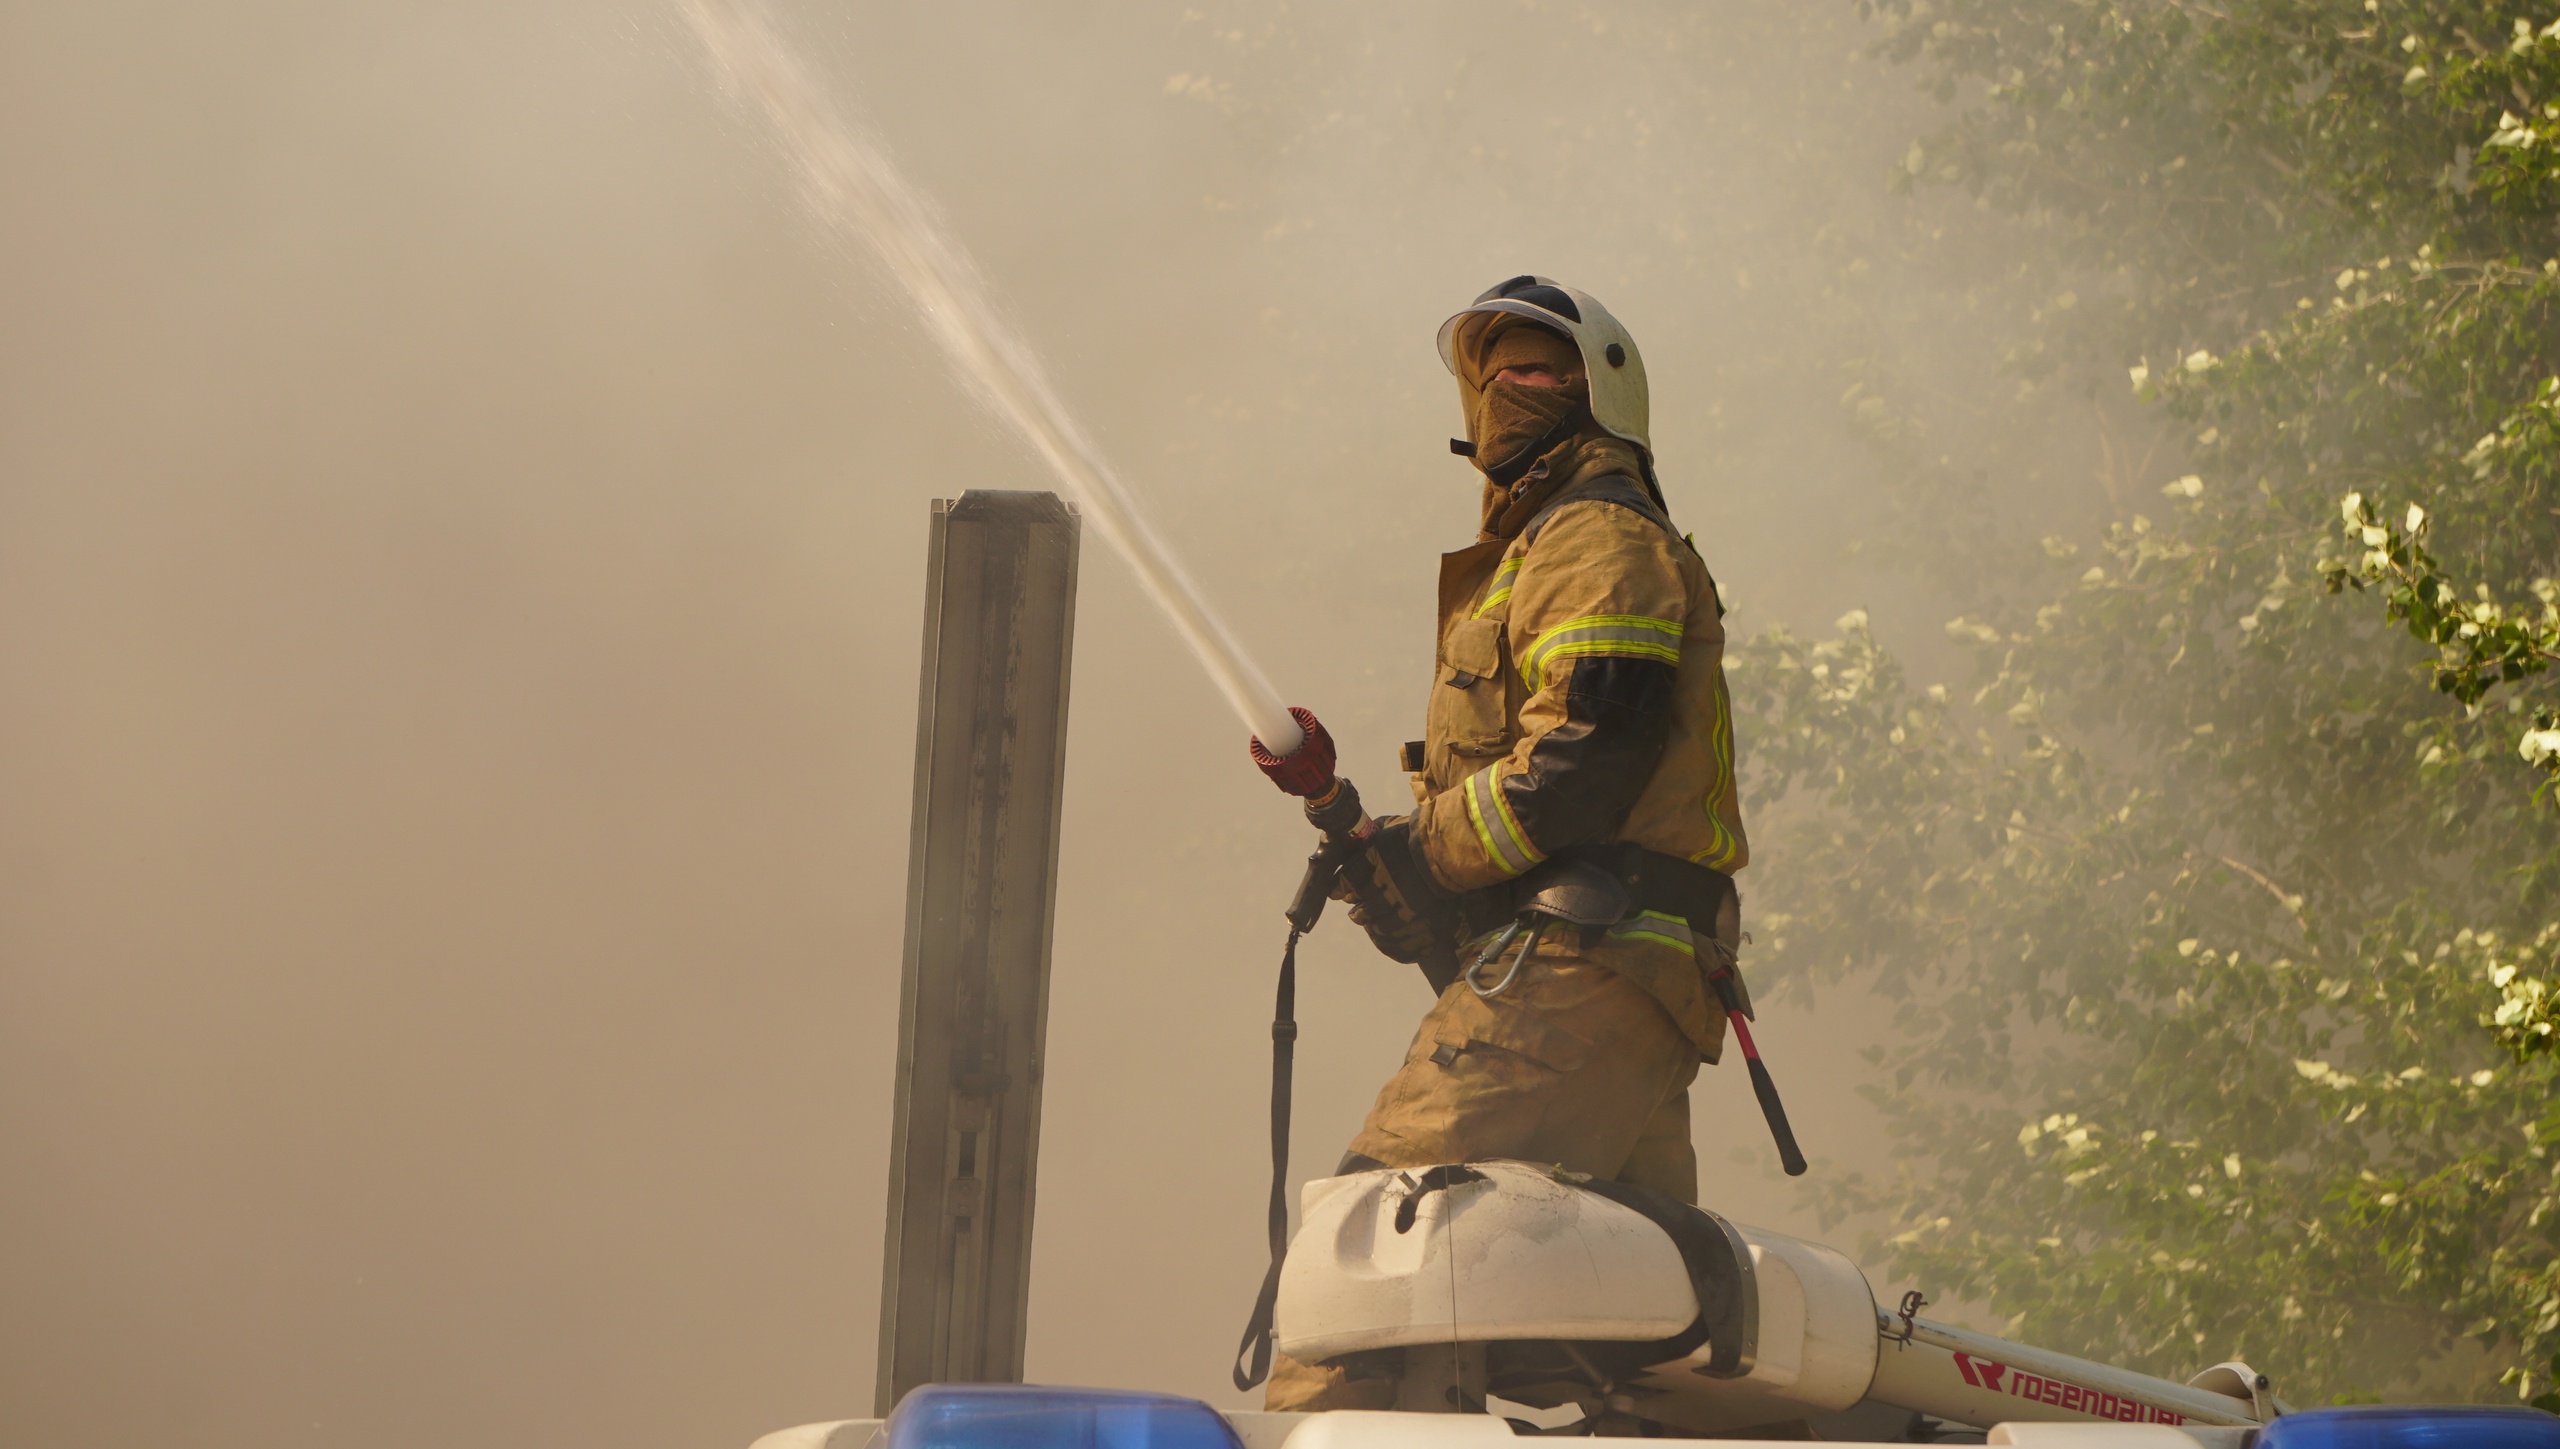 Многие задаются вопросом, как же пожарные дышат, когда вокруг дым. Вот и ответ — прикрывают рот и нос специальной маской. Или надевают кислородную